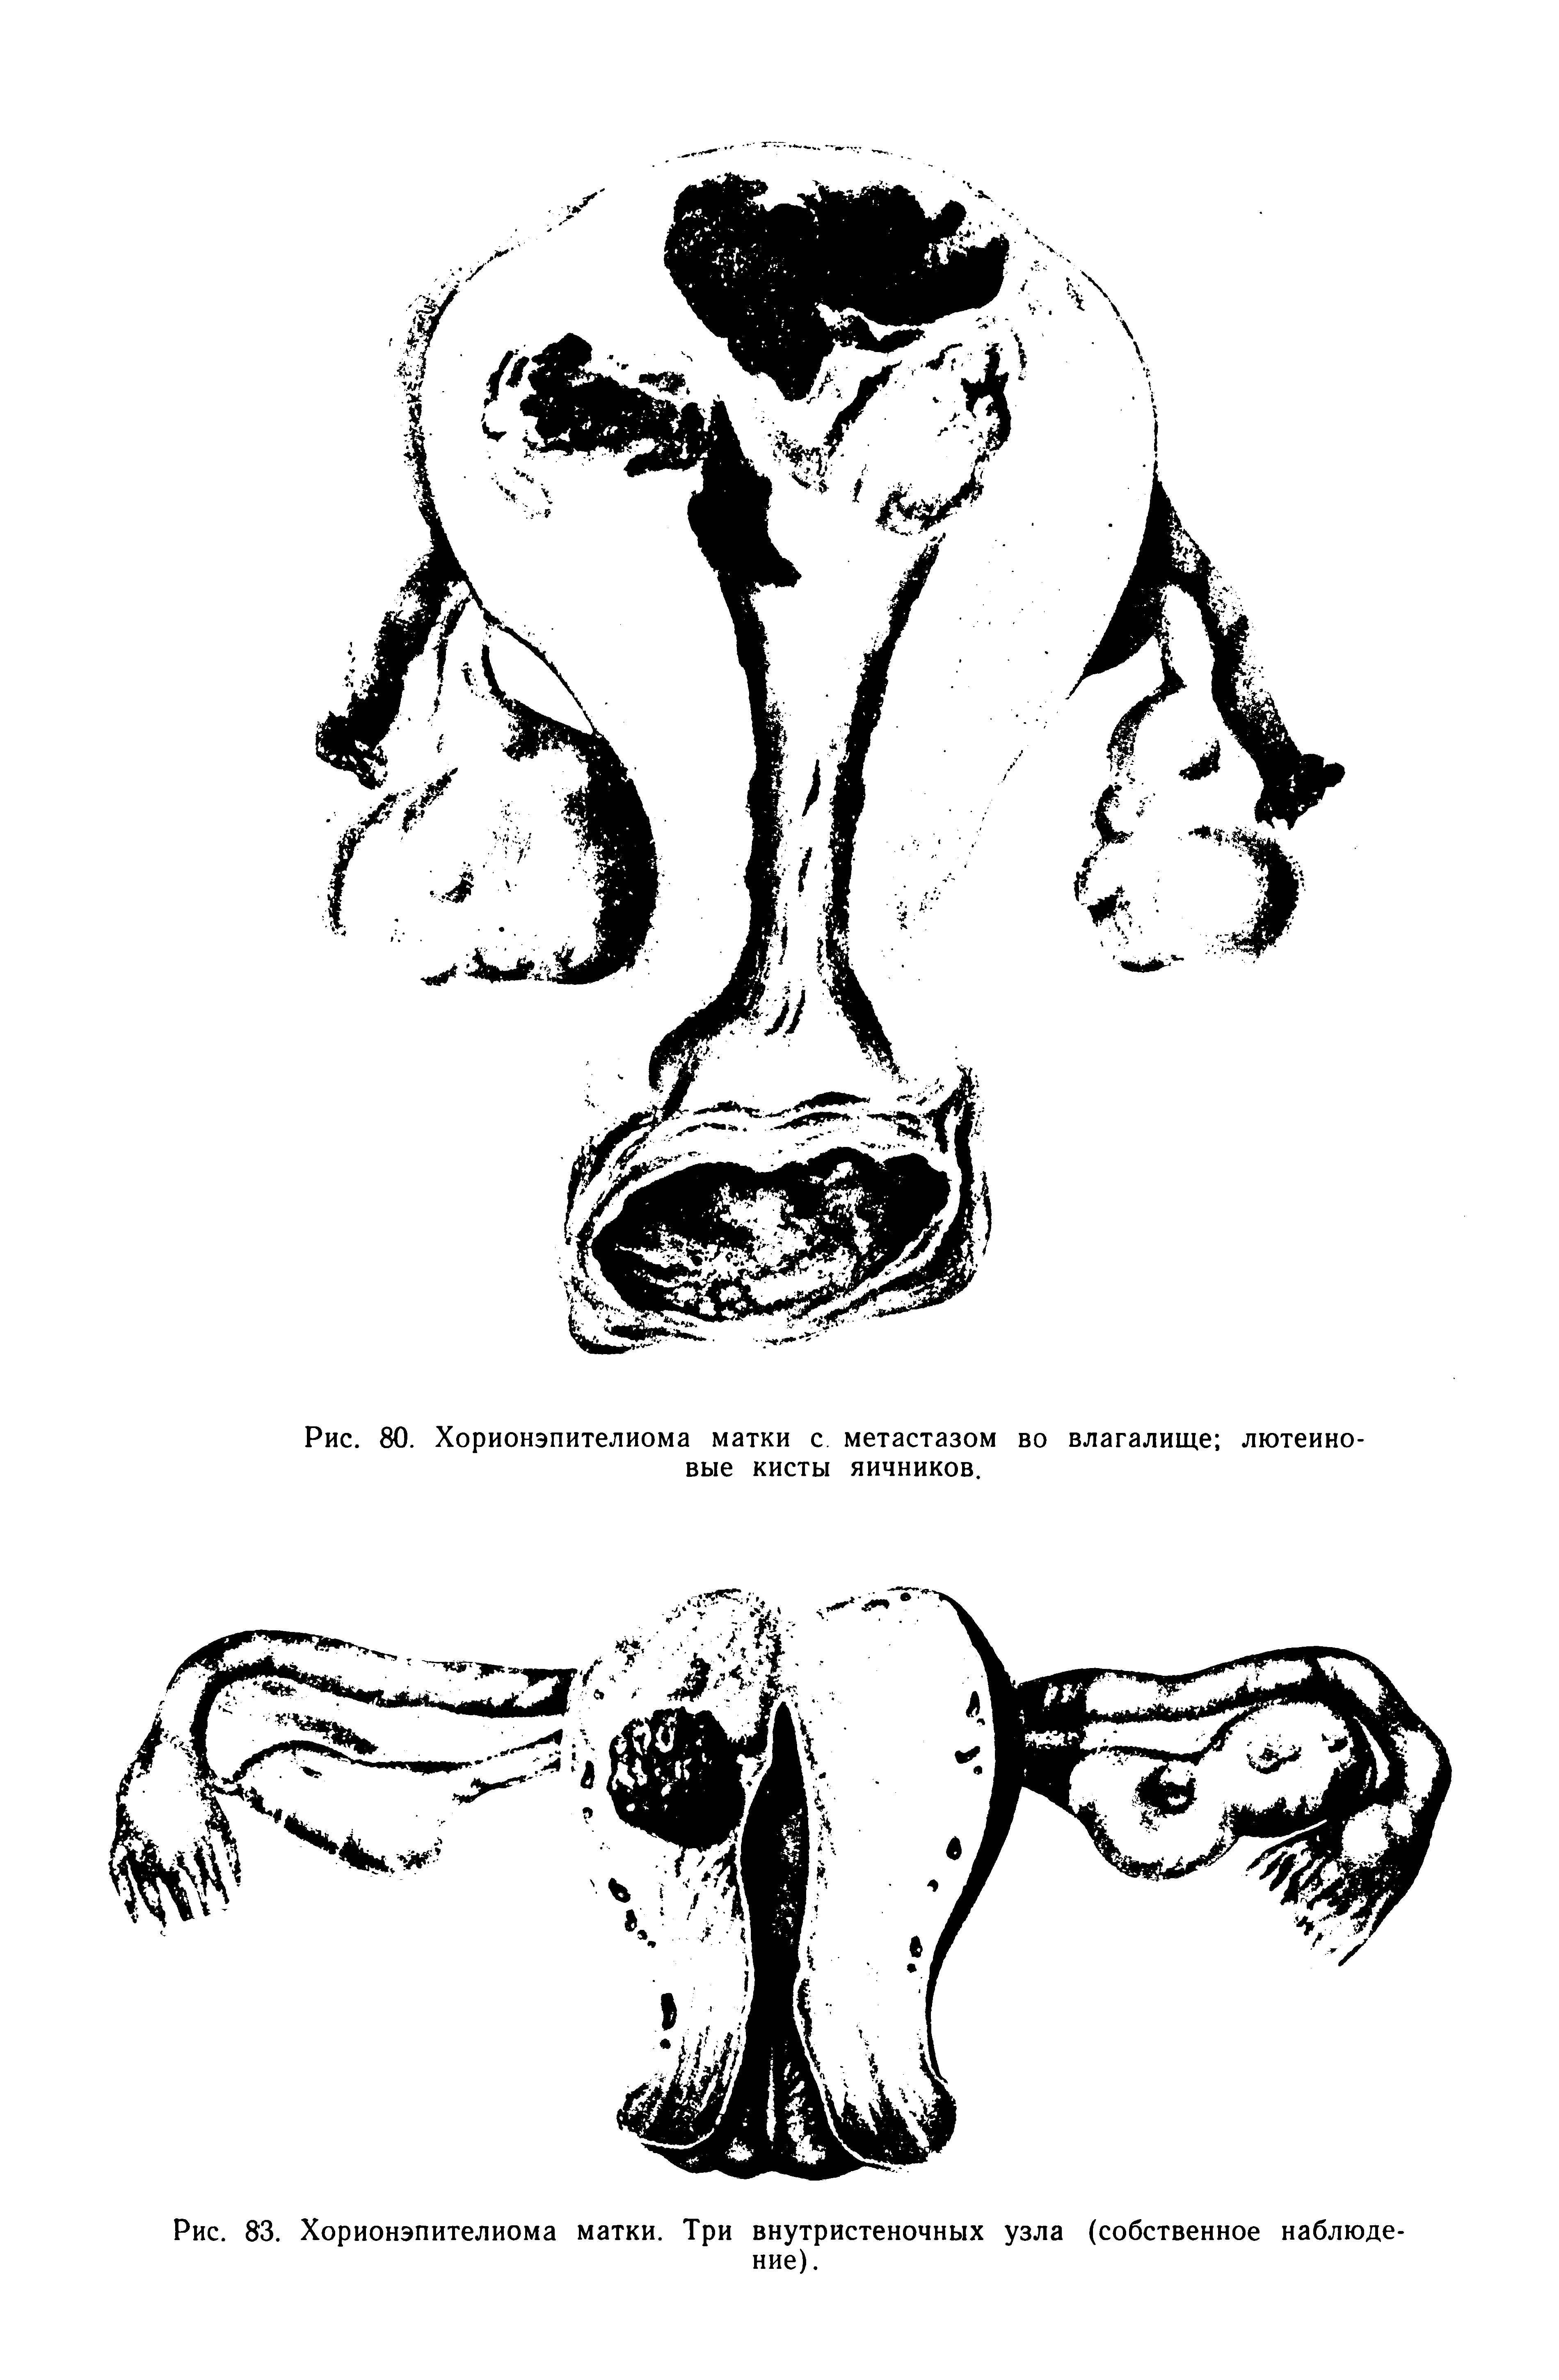 Рис. 83. Хорионэпителиома матки. Три внутристеночных узла (собственное наблюдение).